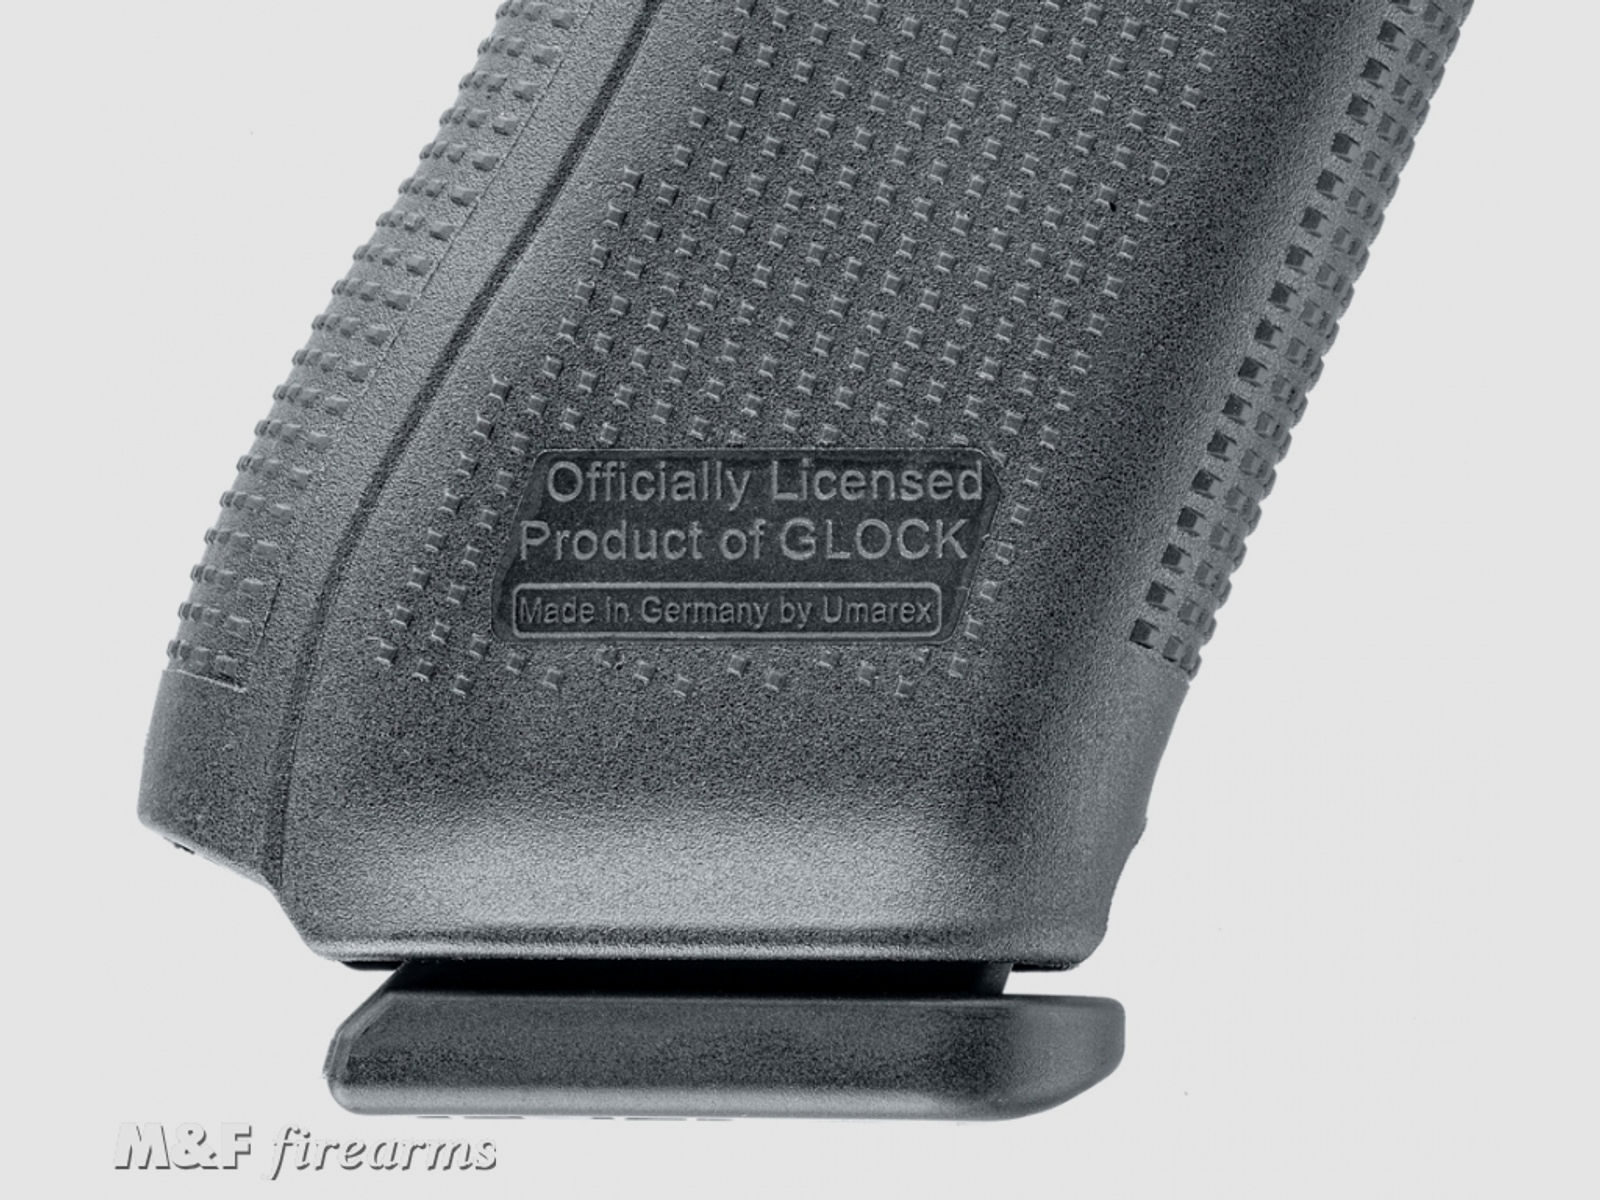 GLOCK 17 Gen5 Kaliber 9 mm P.A.K. die erste lizensierte Schreckschusswaffe der Marke GLOCK als Weltneuheit